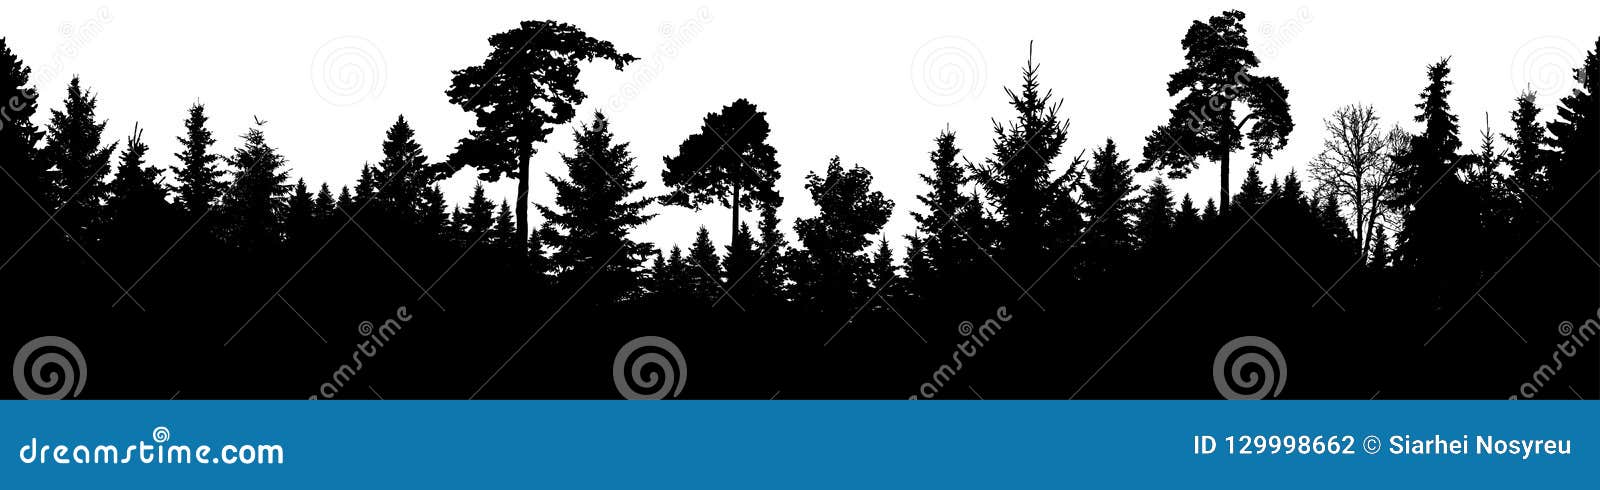 forest silhouette . scotch fir, christmas tree, spruce, fir, pine. seamless panorama